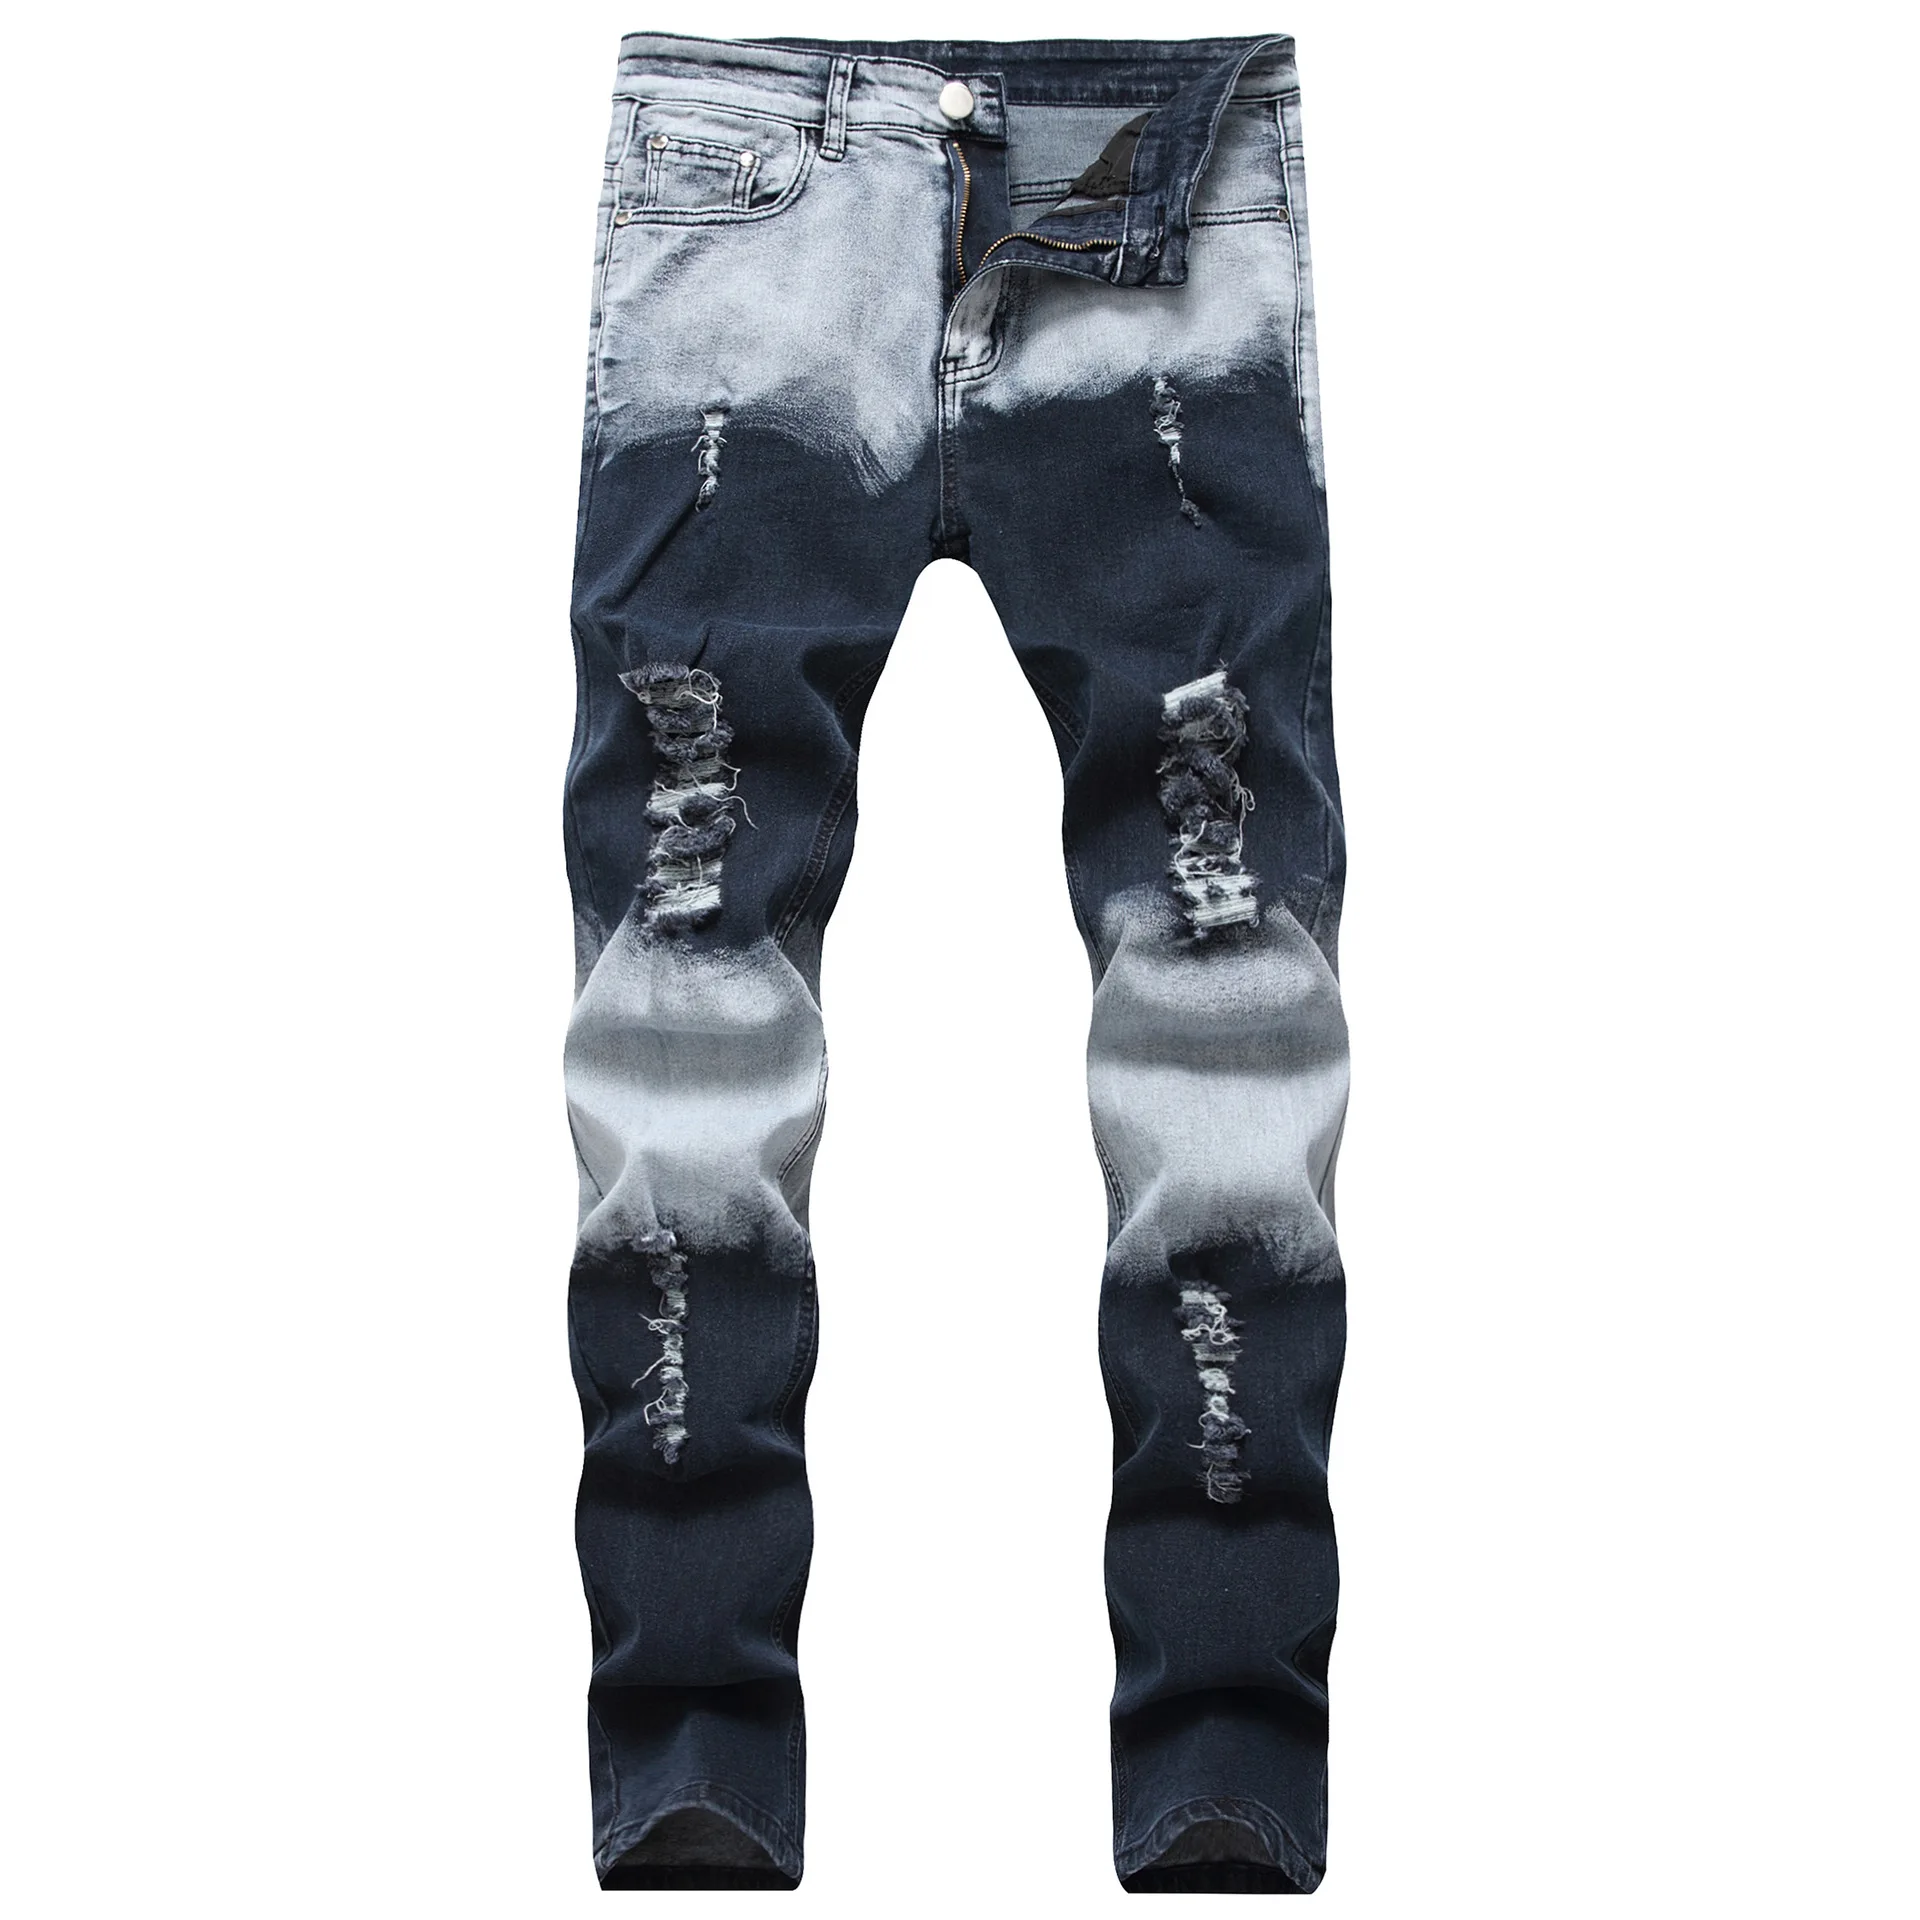 Pantalon Cintura Alta Denim Fabric Material Mens Distressed Jeans - Buy ...